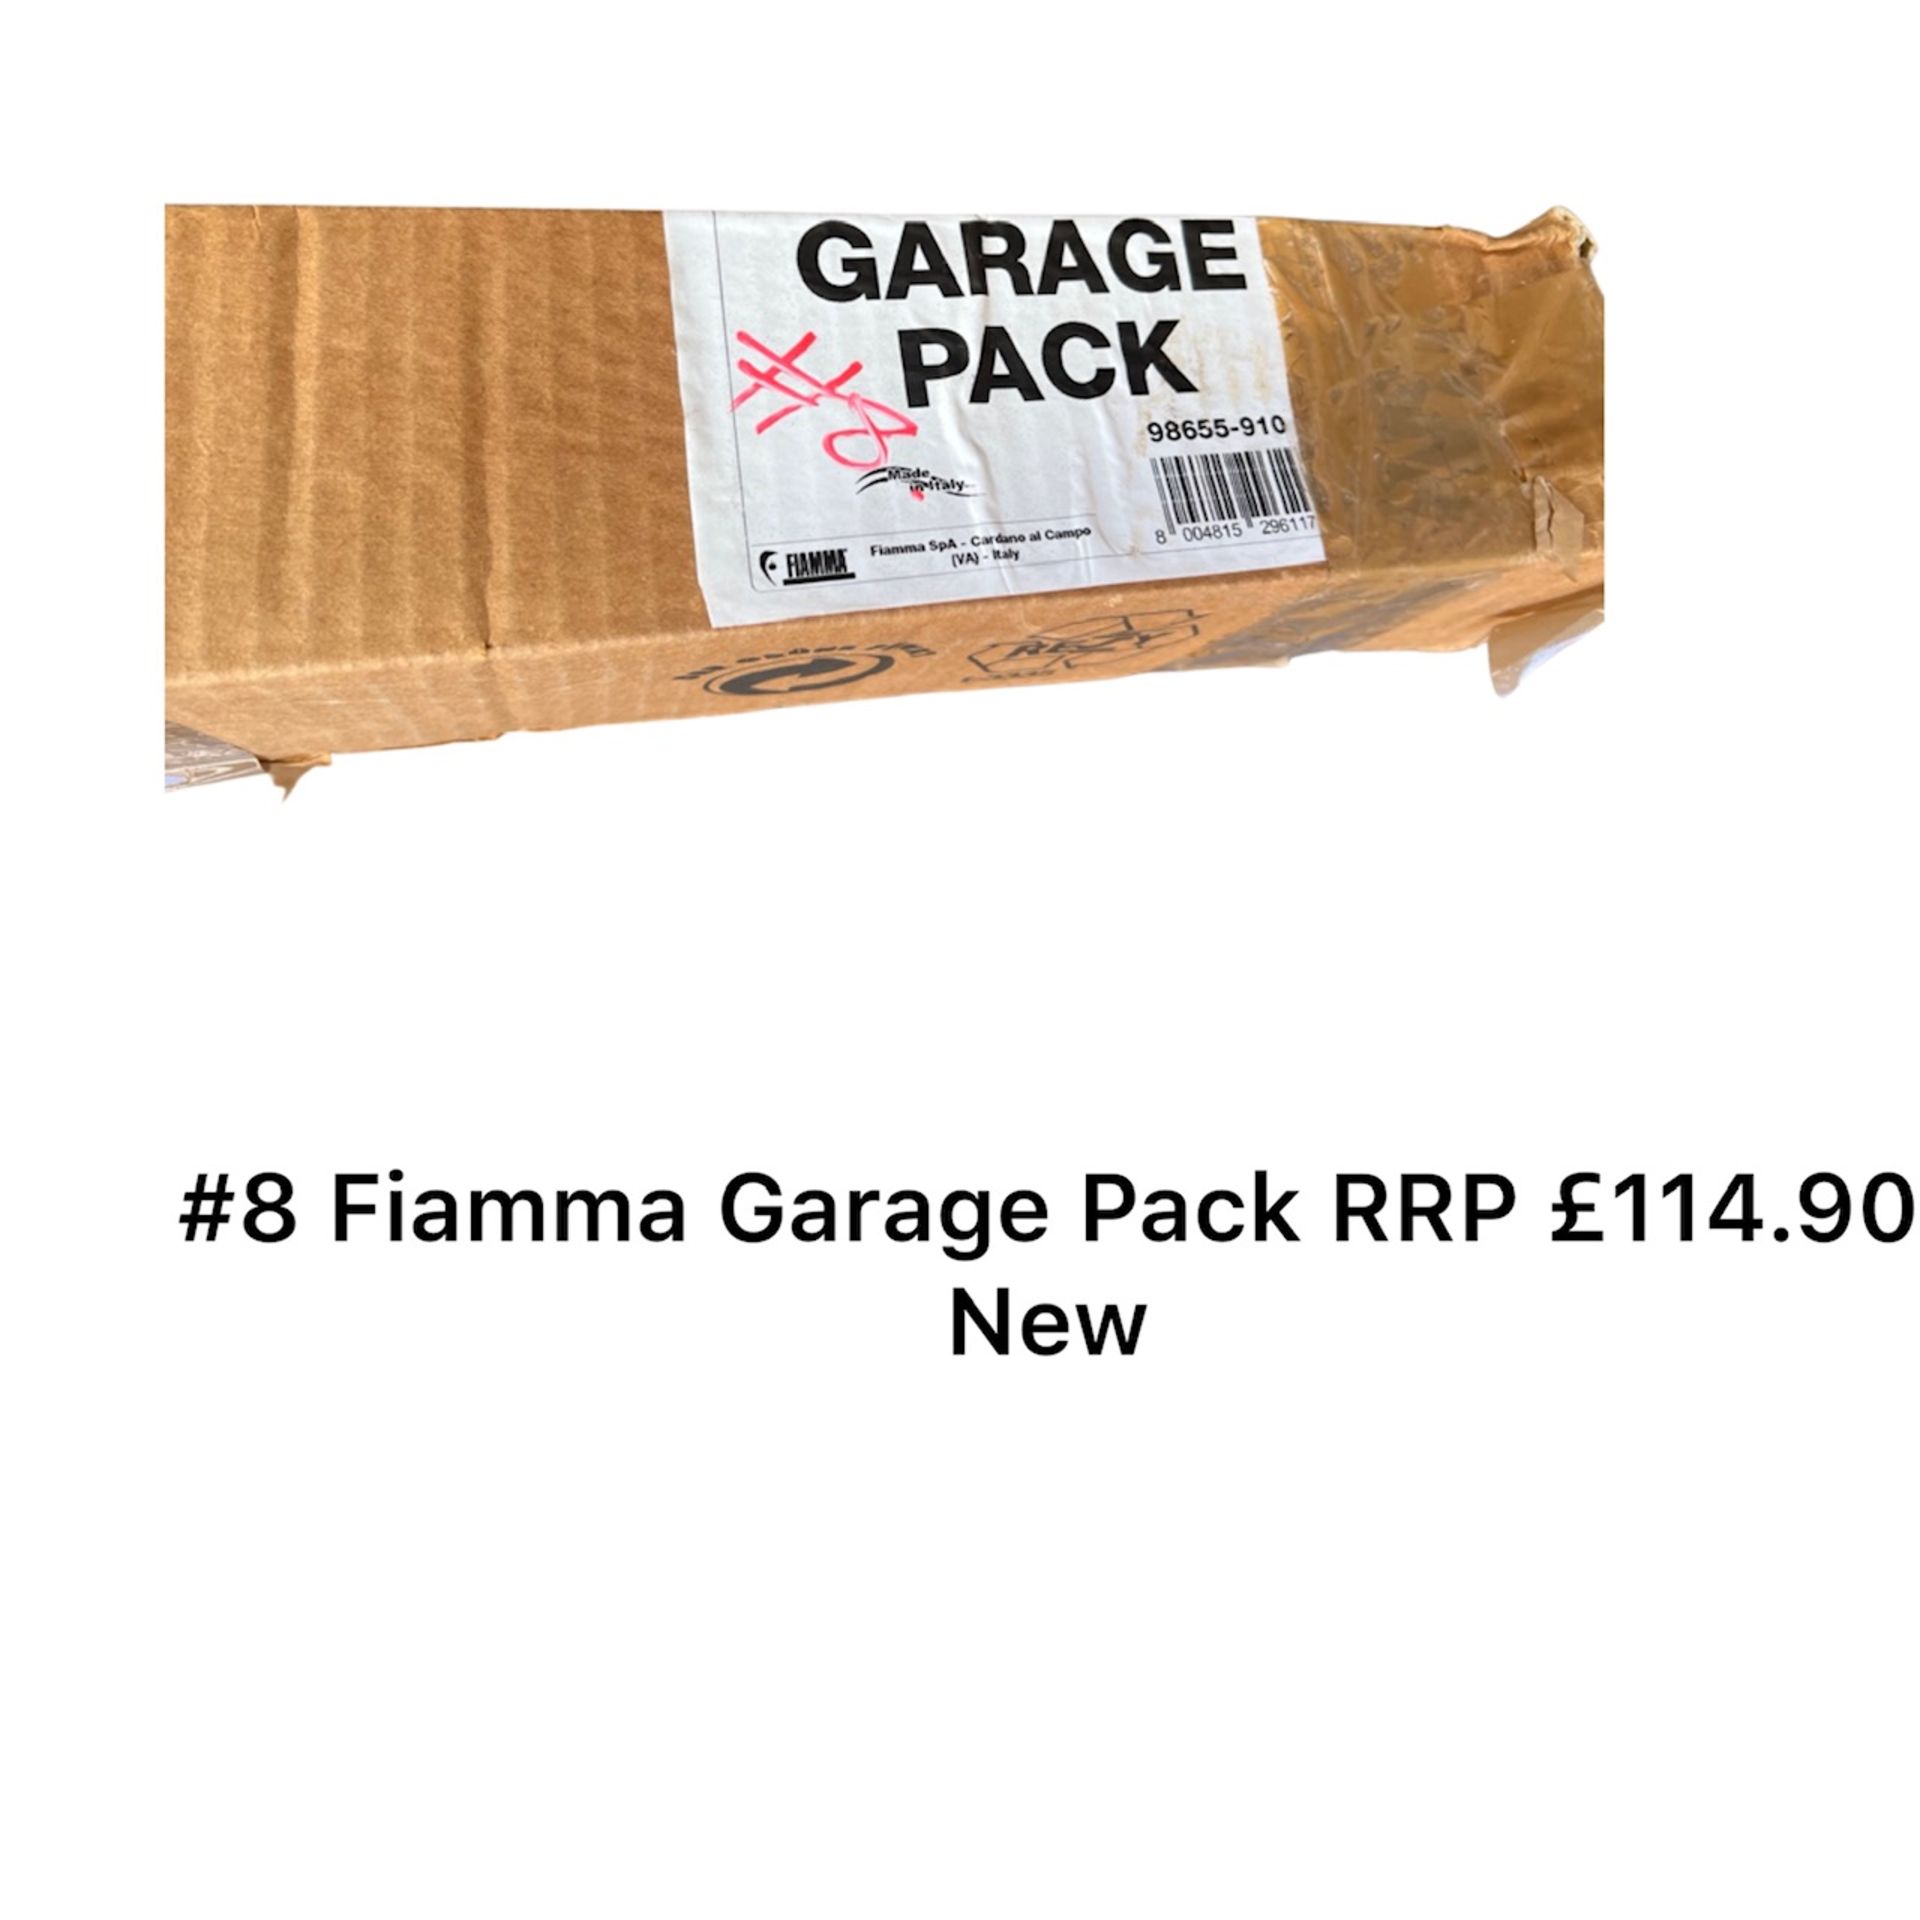 Fiamma Garage Pack RRP £114.90 *NO VAT* - Image 2 of 2